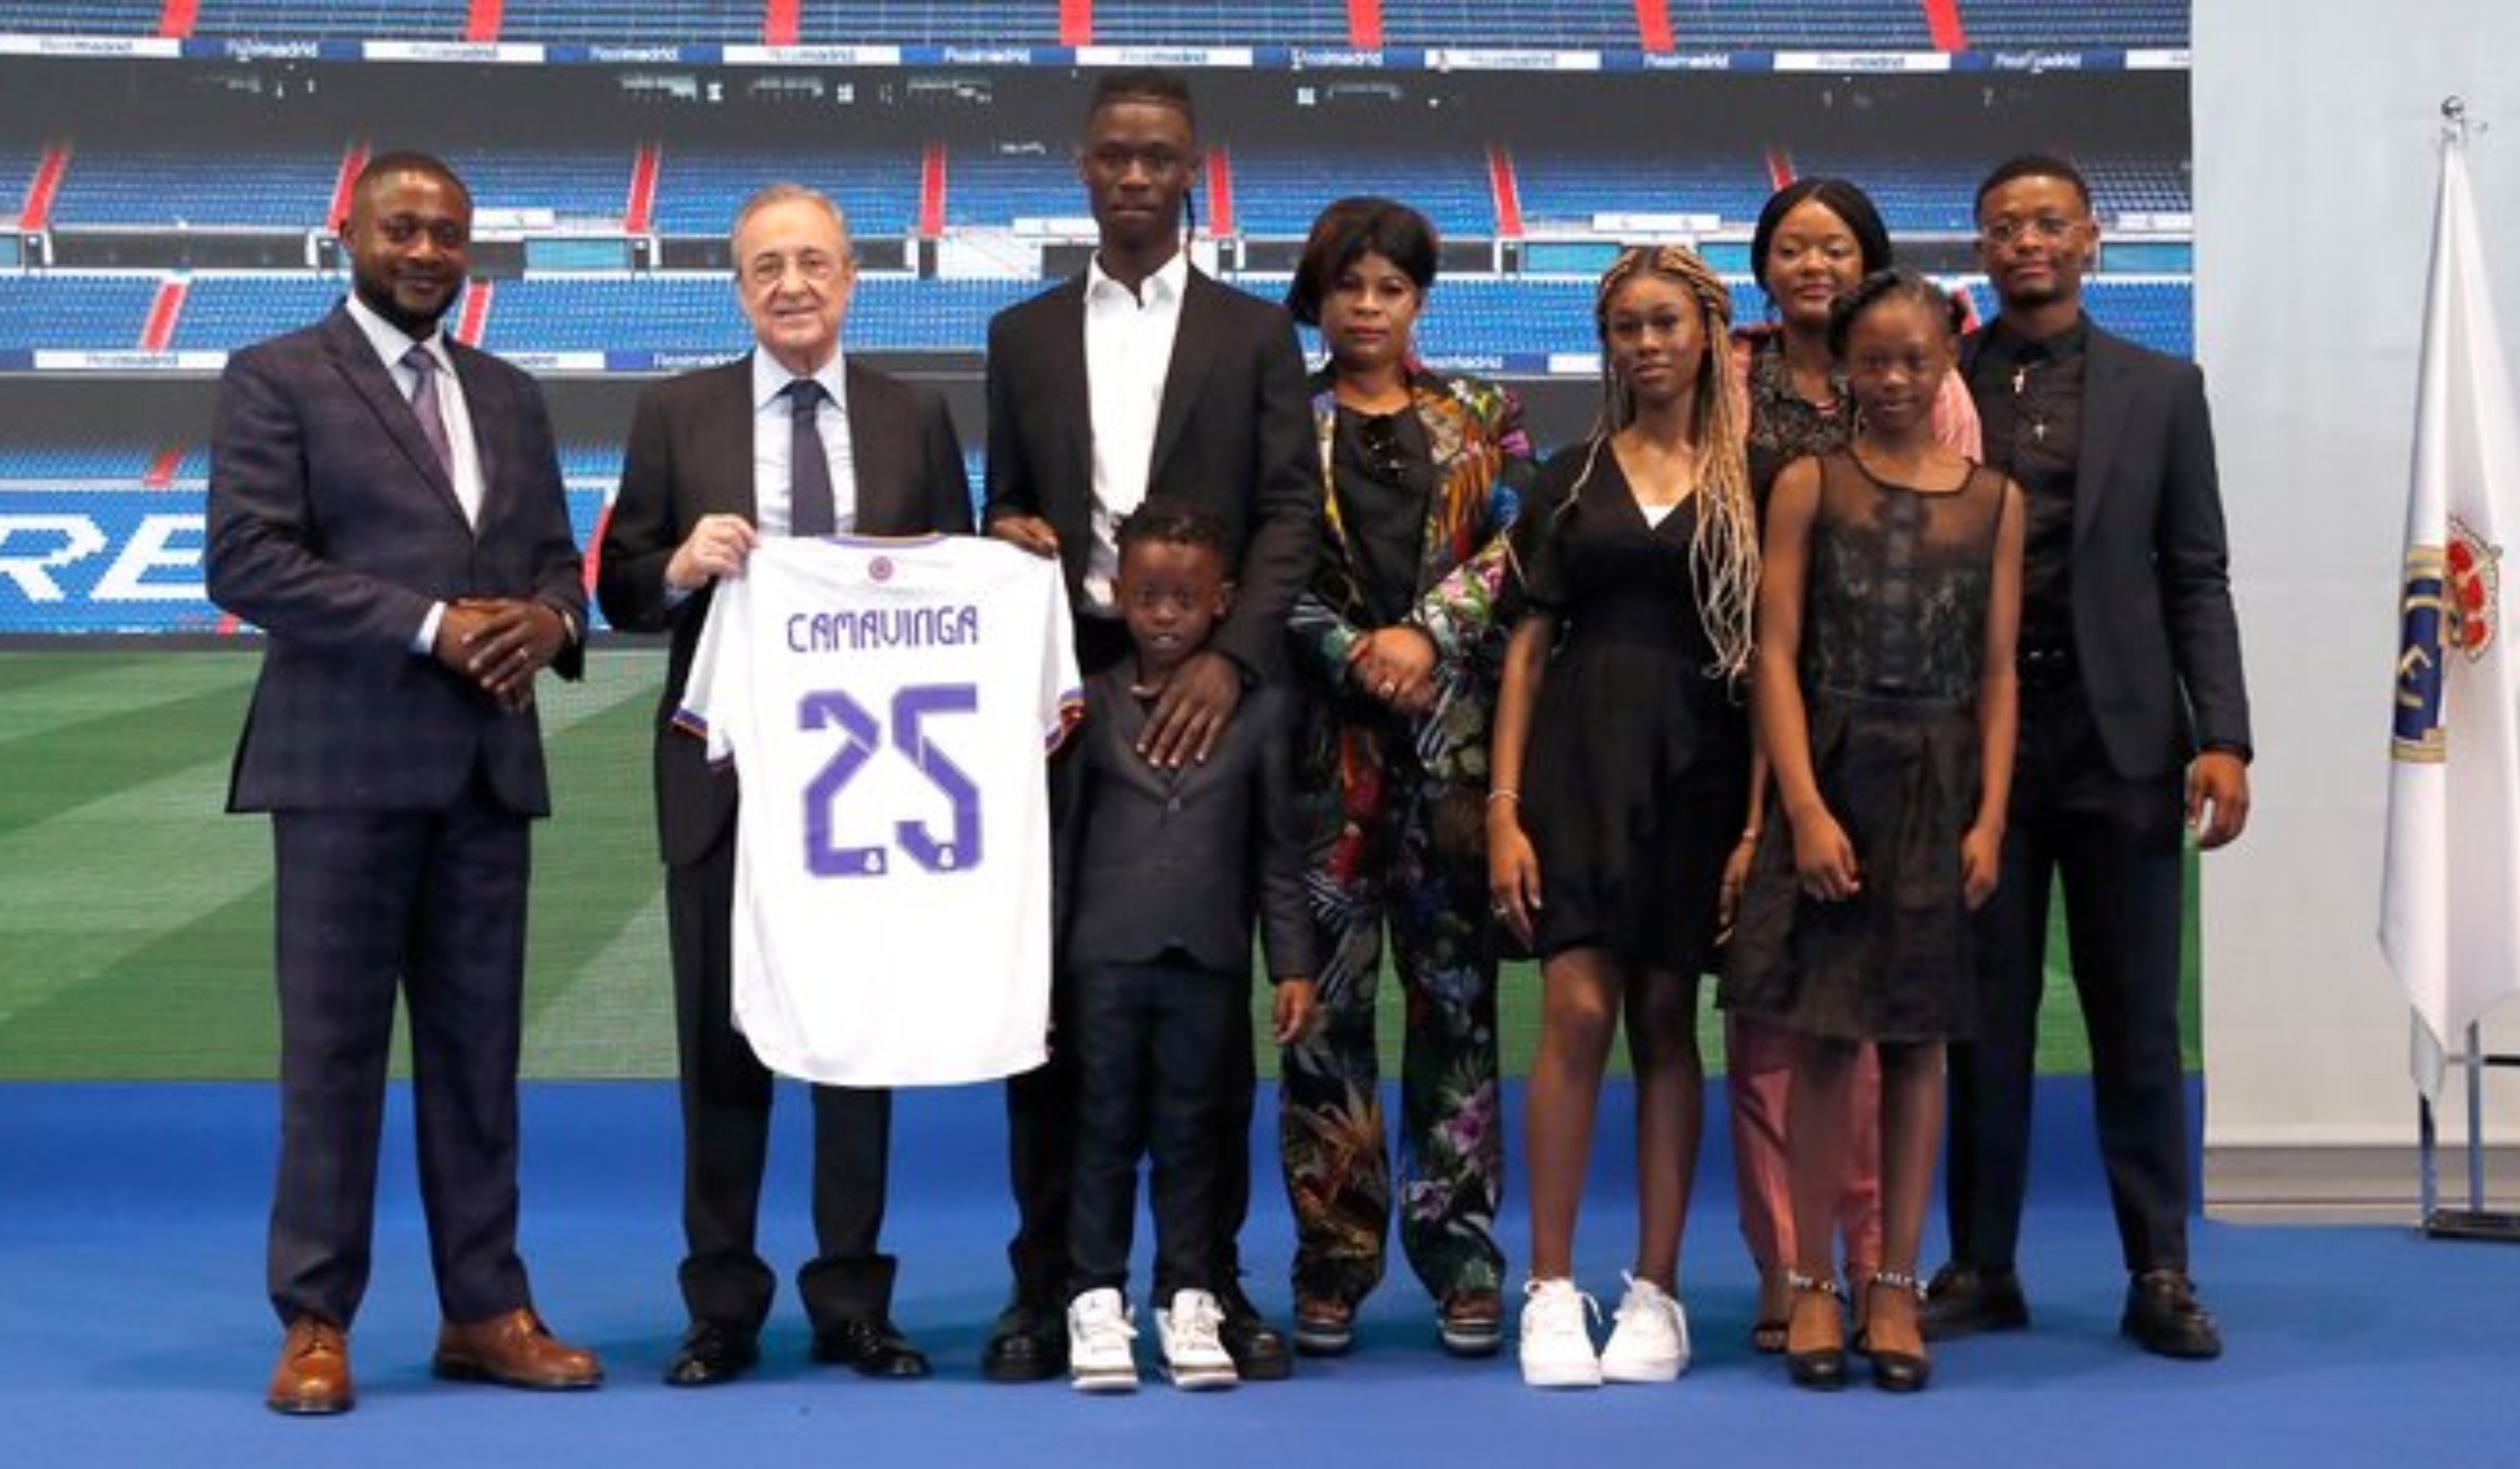 Acompañado por sus padres y hermanos, Eduardo Camavinga posó después con el presidente con una camiseta con su nombre y el número 25. Foto Real Madrid. 